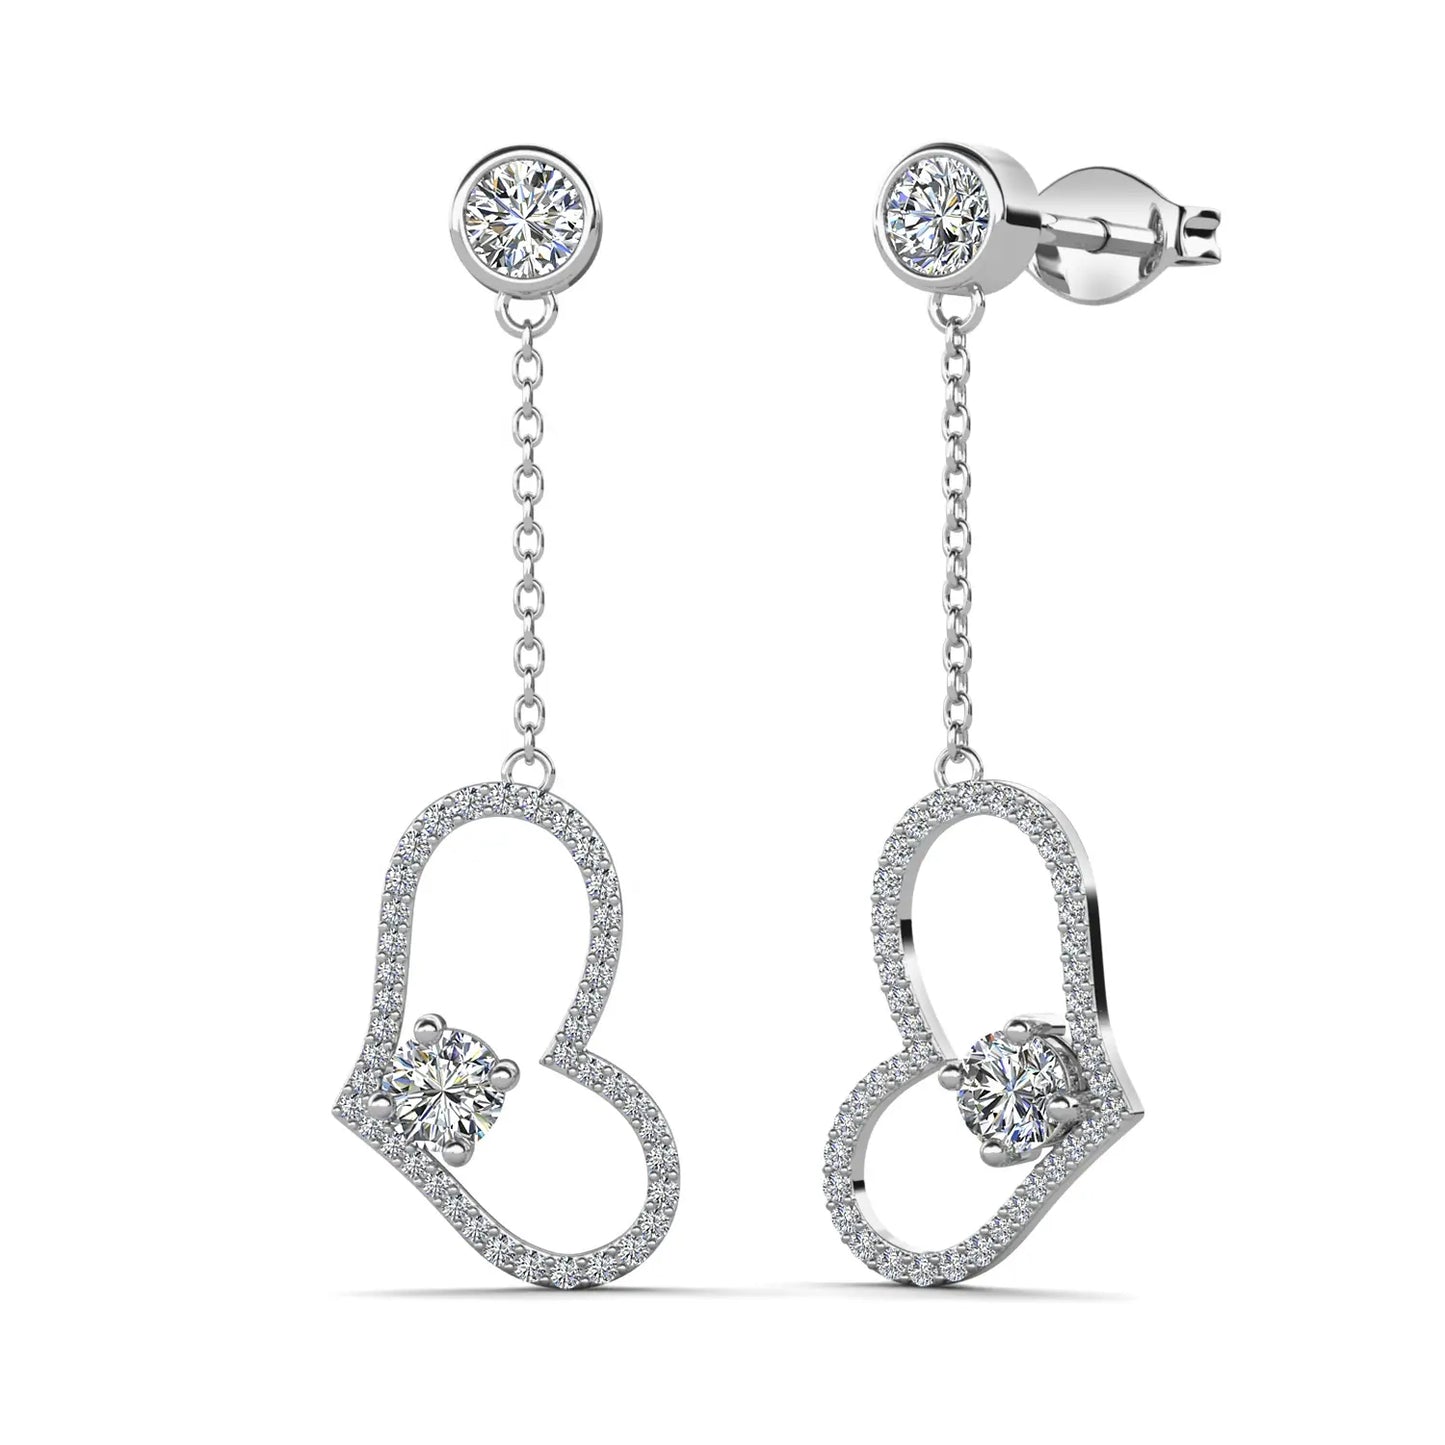 4 * 0.5CT Moissanite Diamond Earrings -925 Sterling Silver D Color VVS Long Drop Heart Earrings Jewellery for Women